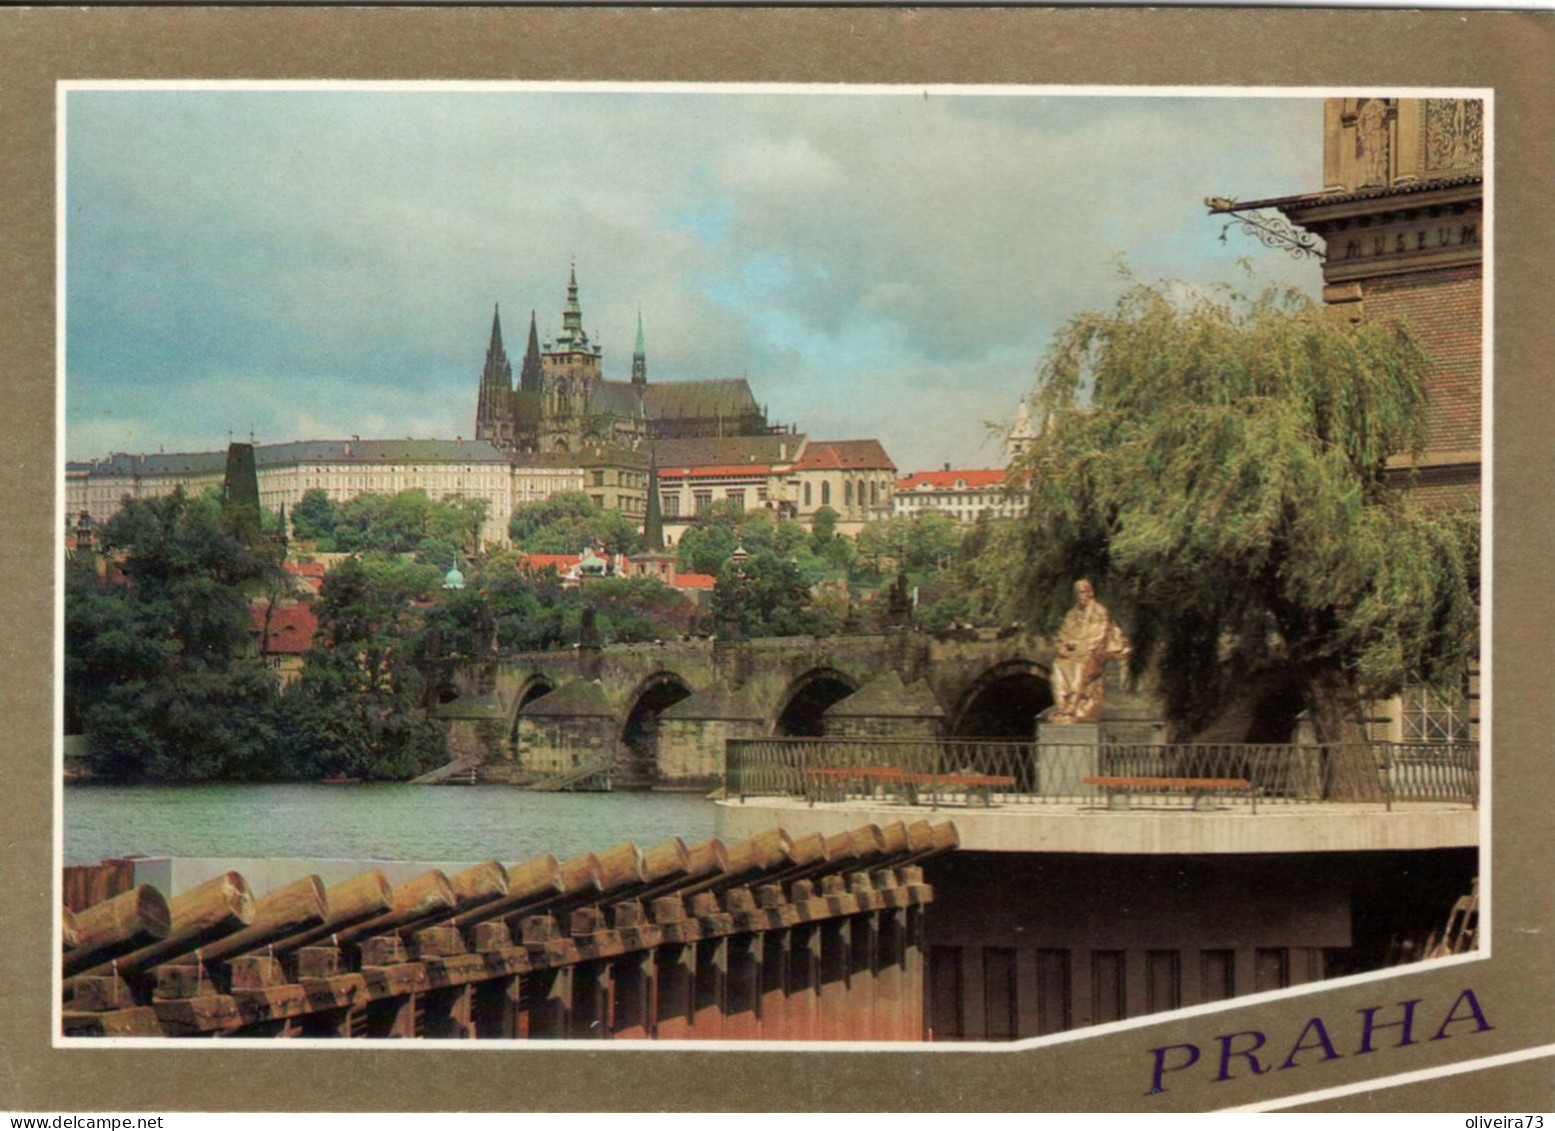 PRAHA - República Checa